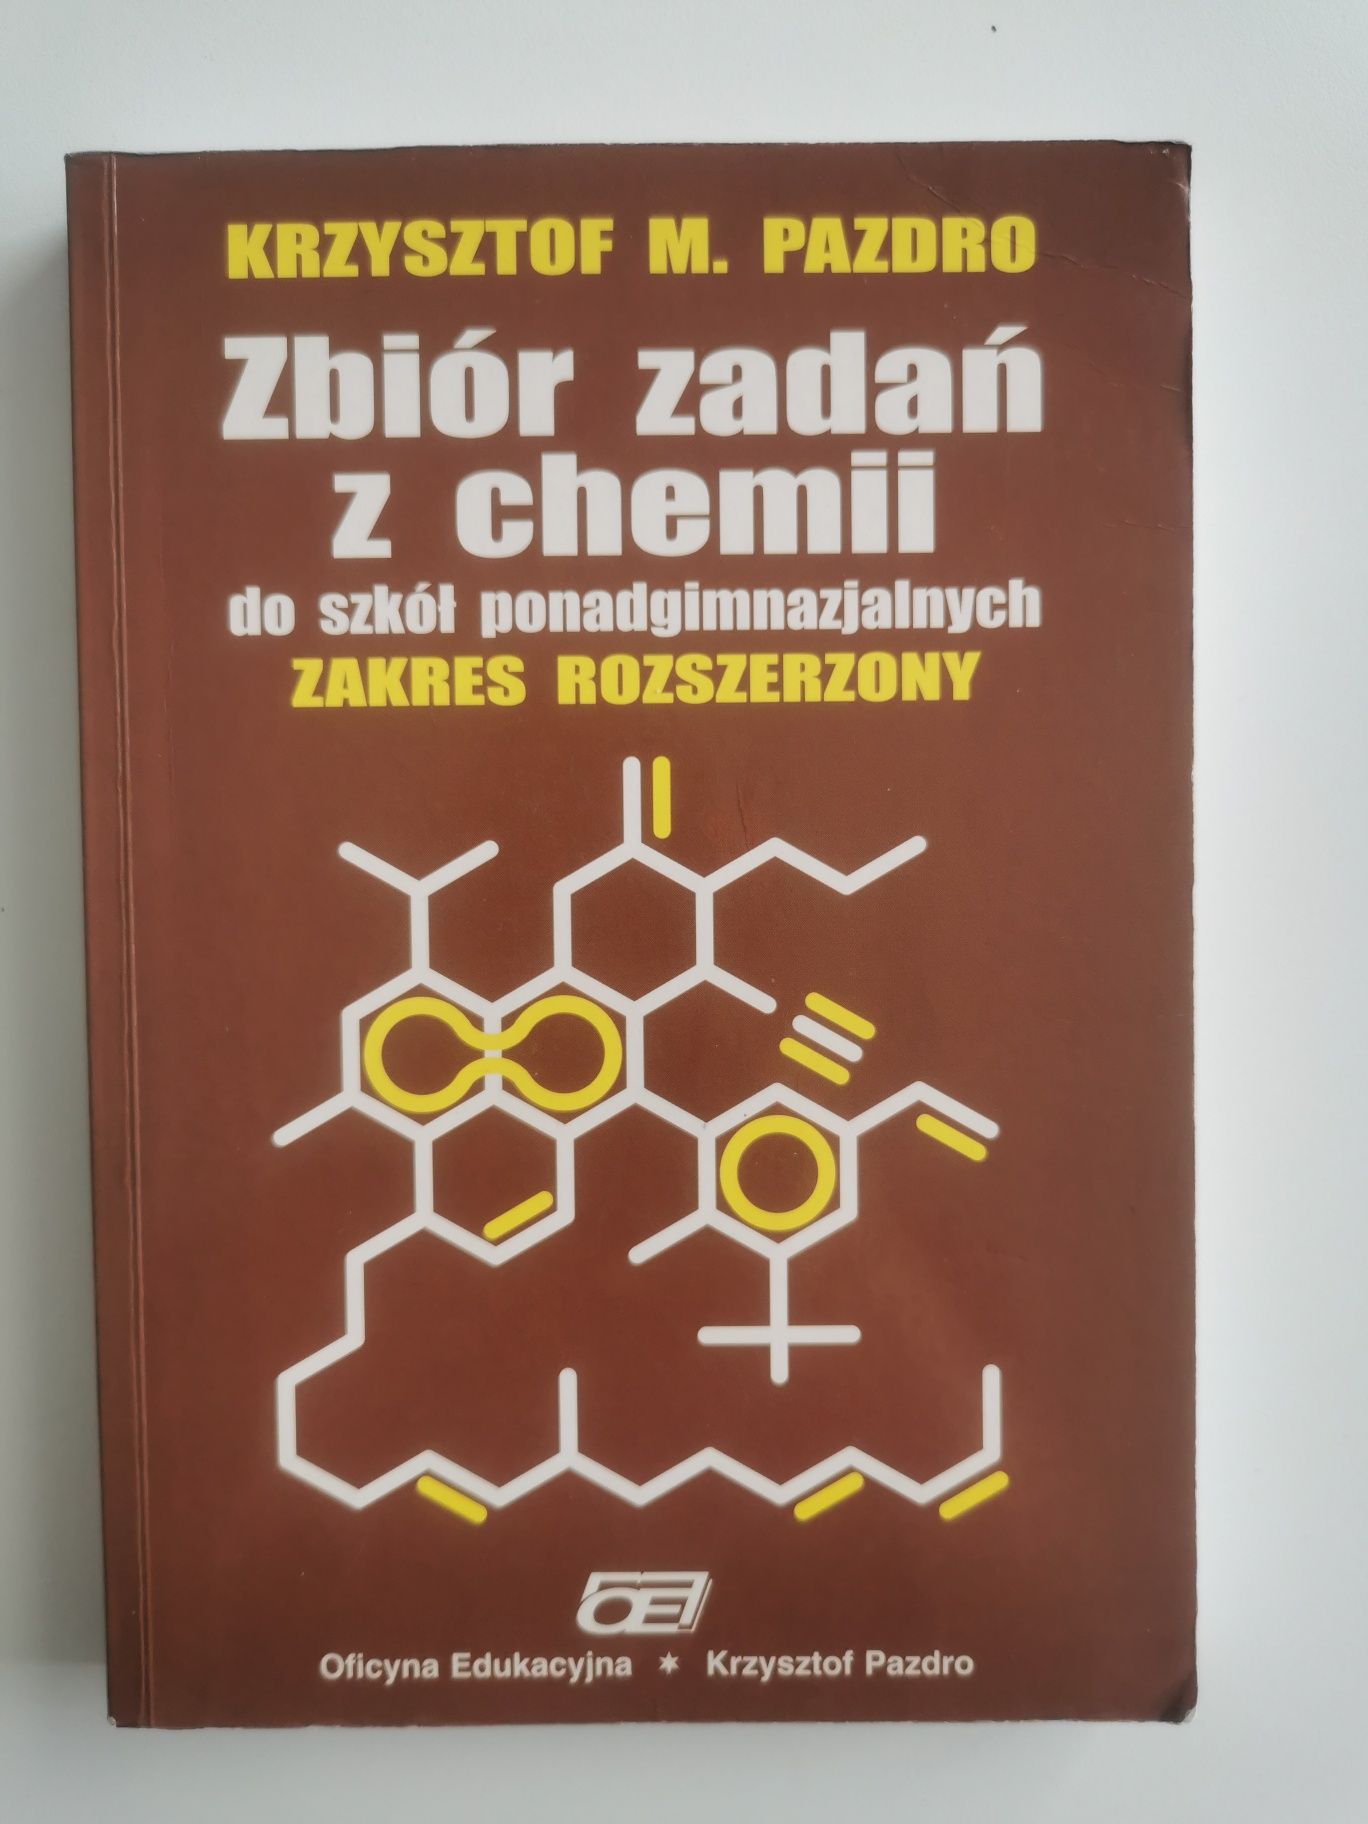 Zbiór zadań z chemii ZR, PAZDRO